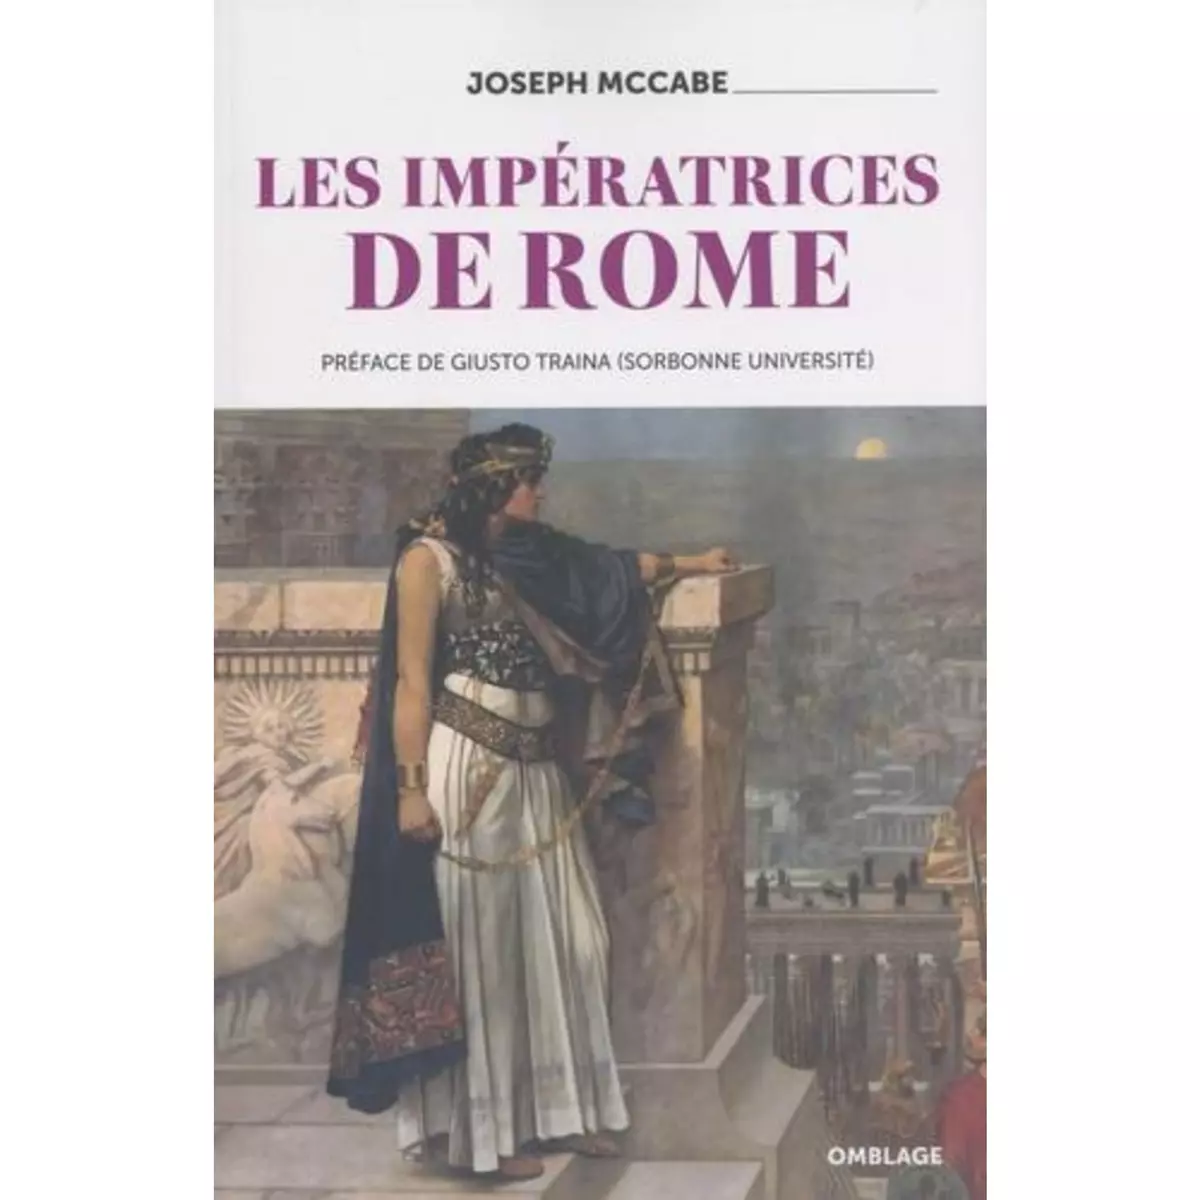  LES IMPERATRICES DE ROME, McCabe Joseph